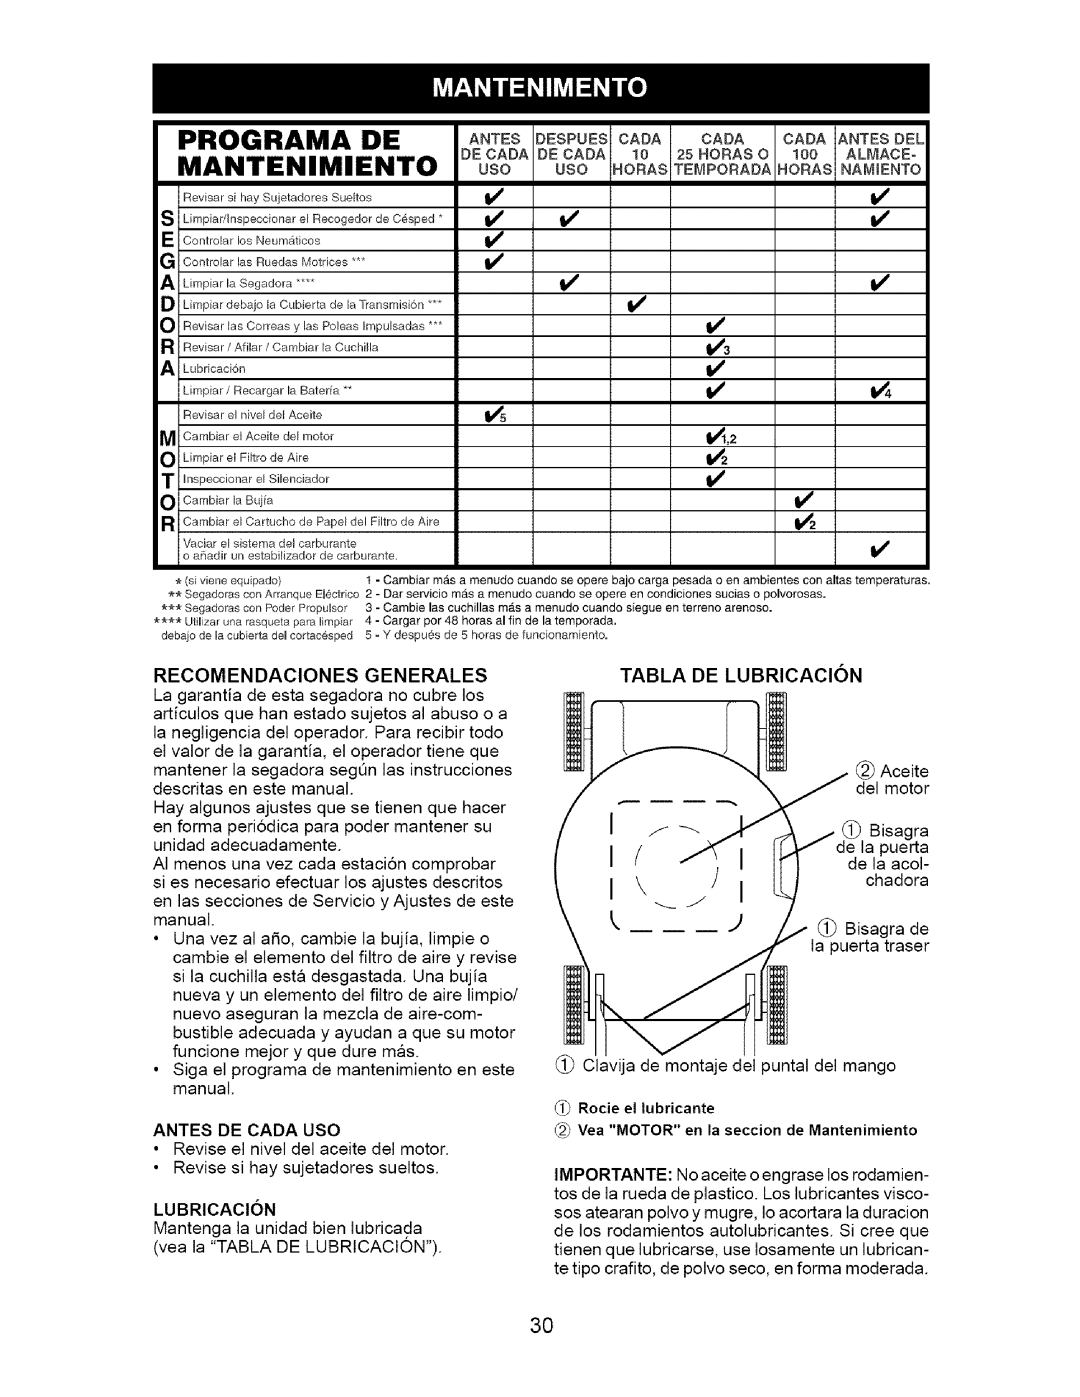 Craftsman 917.377011 owner manual Programa De Mantenimiento, Recomendaciones Generales, Lubricacion 